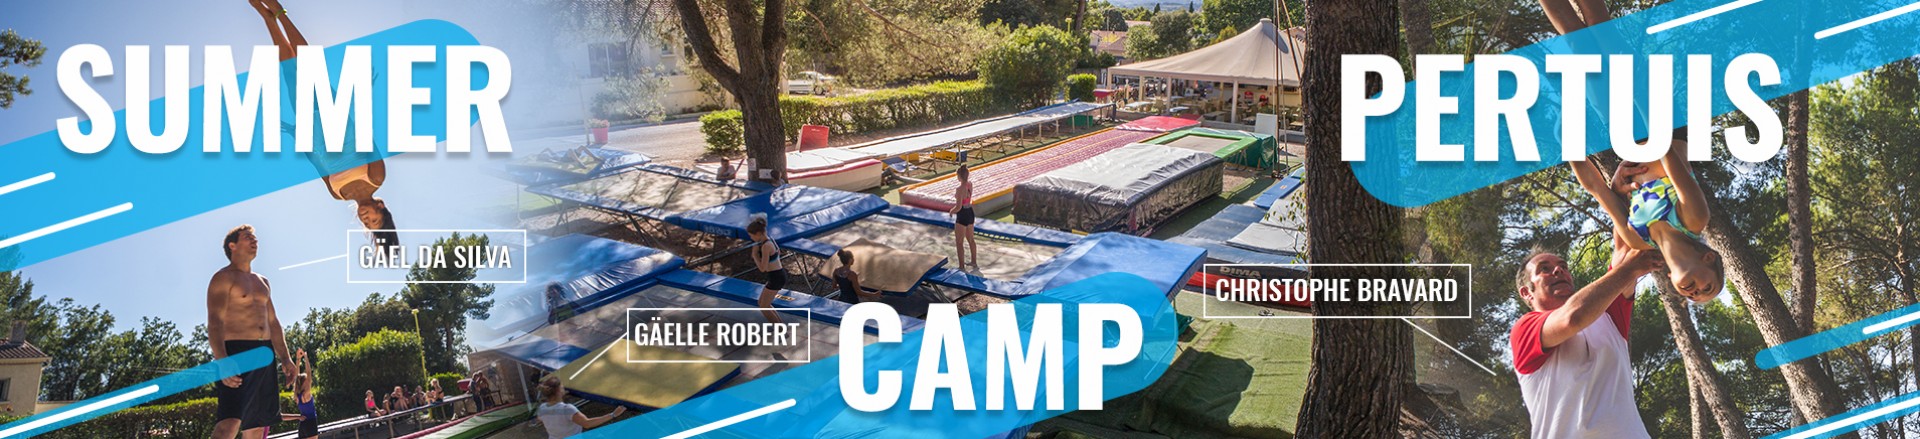 Espace trampoline Summer Camp Pertuis. On peut voir des trampolines de competions Ultimate et grands masters....